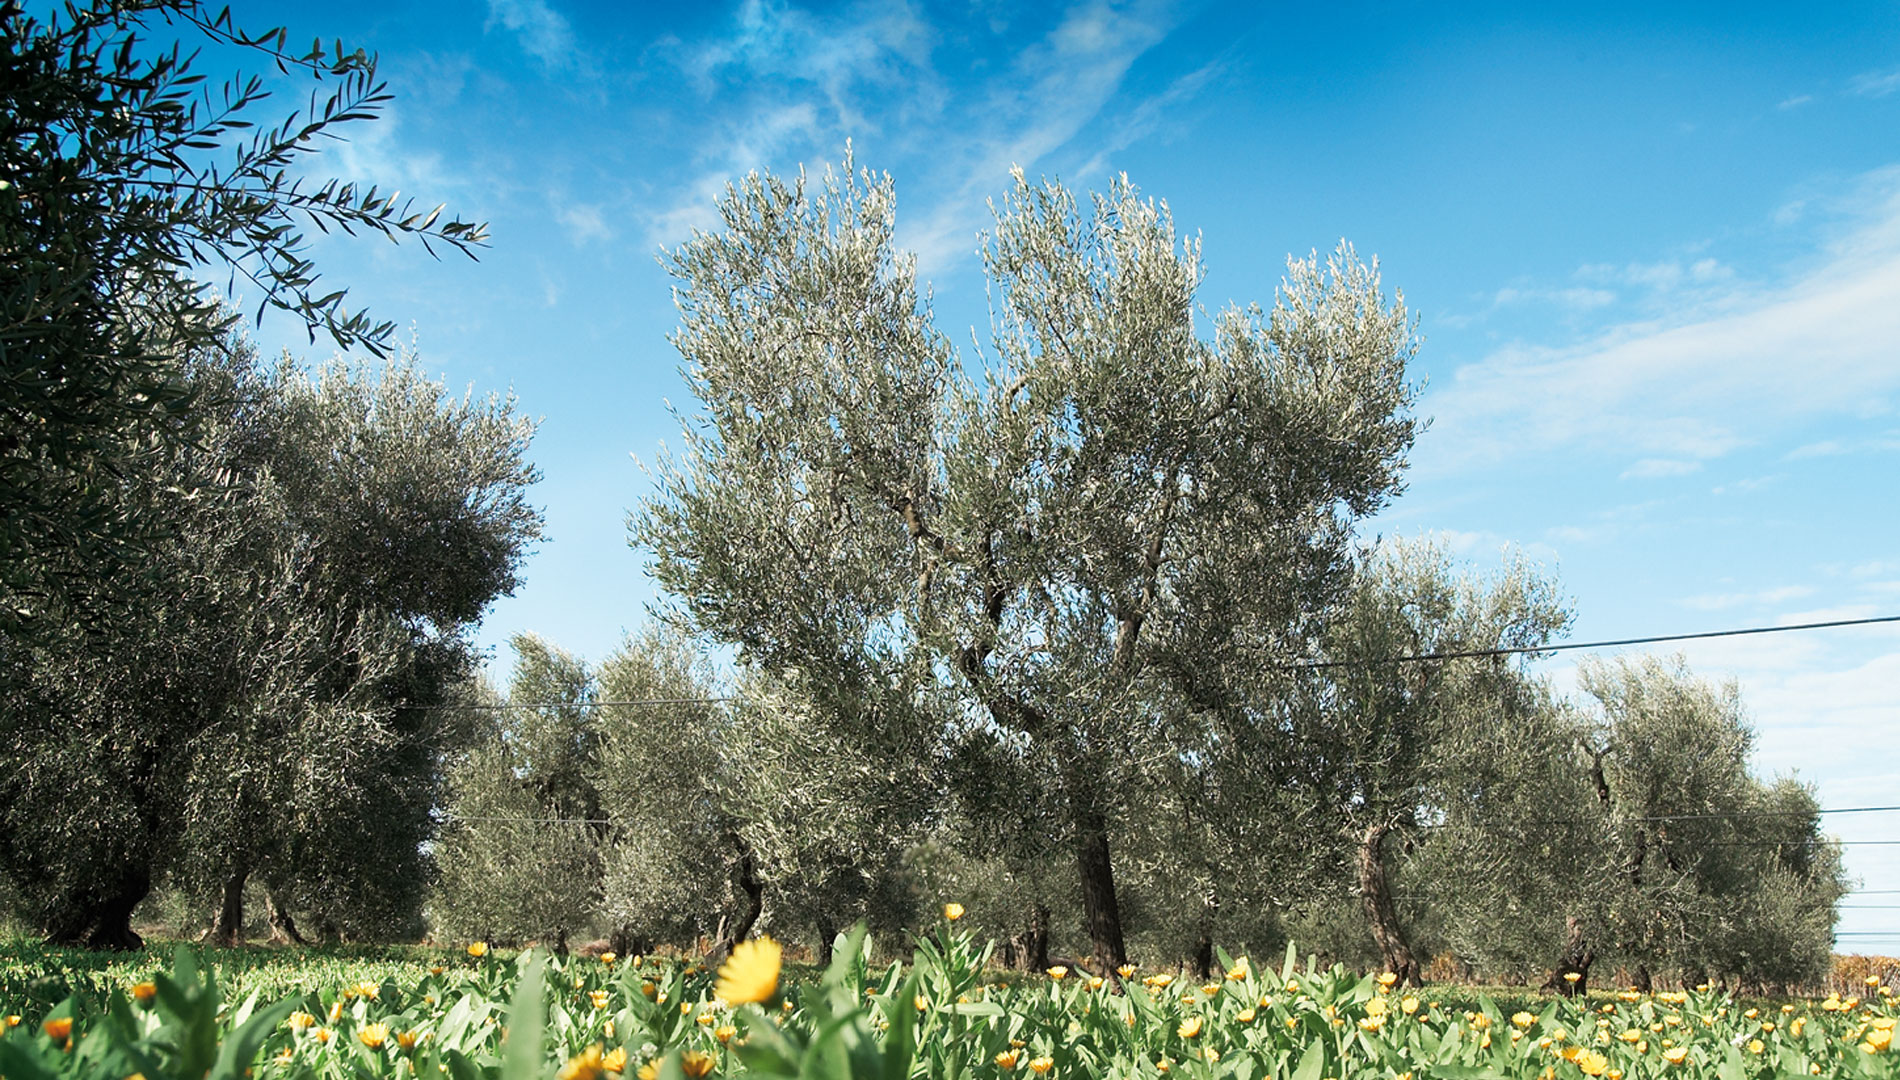 Zitrusfrucht- und natürlich aromatisierte Olivenöle Aromatisierte Öle mit Limonen-, Basilikum-, Grapefruit-, Zitronen-, Organo-, Orangen-, Rosmarin-, Zitronengrasgeschmack